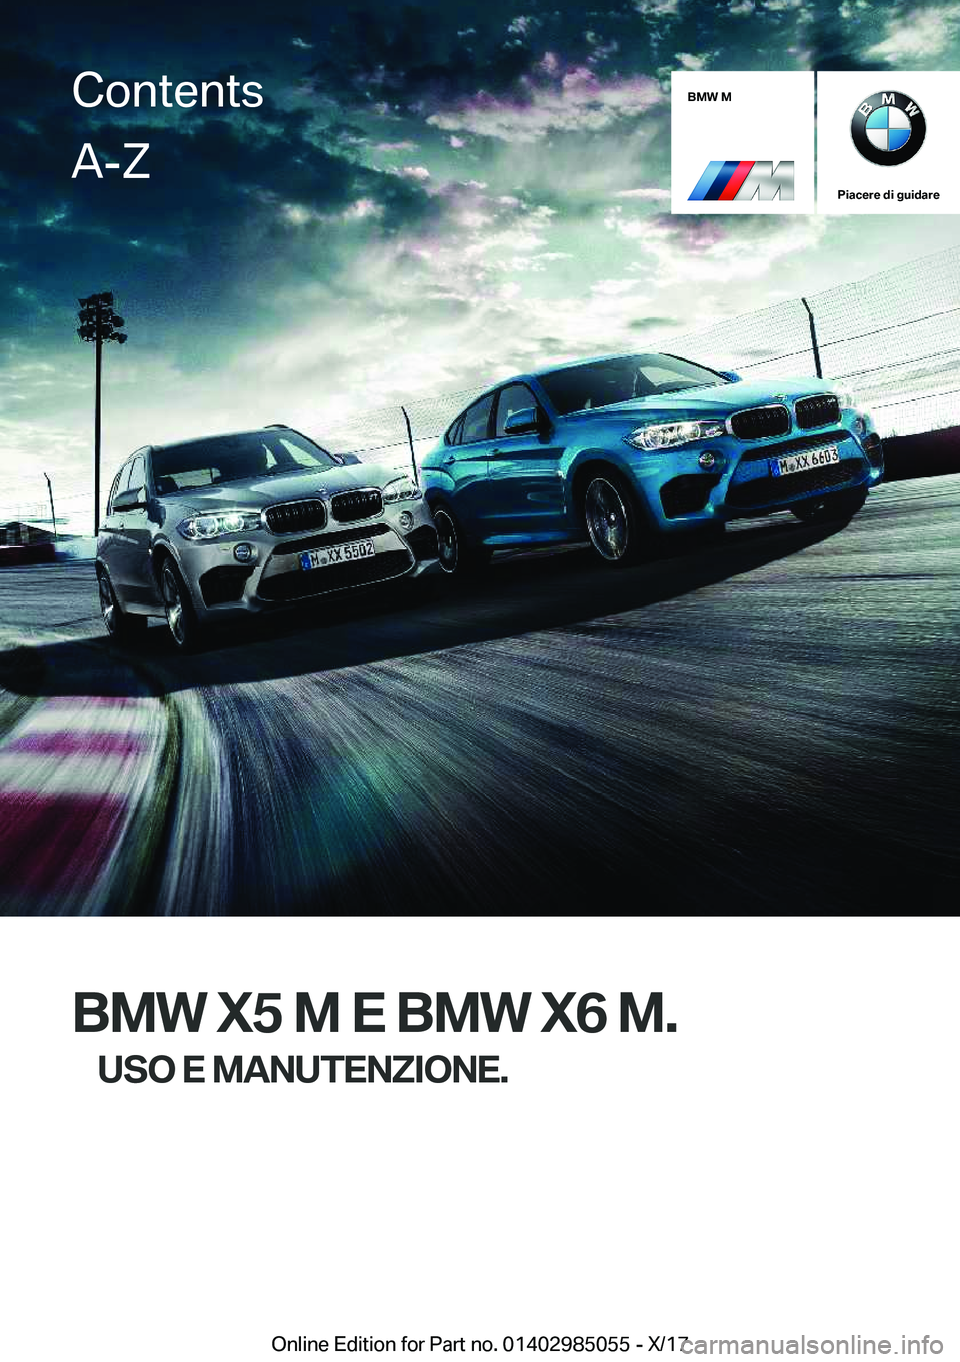 BMW X6 M 2018  Libretti Di Uso E manutenzione (in Italian) �B�M�W��M
�P�i�a�c�e�r�e��d�i��g�u�i�d�a�r�e
�B�M�W��X�5��M��E��B�M�W��X�6��M�.�U�S�O��E��M�A�N�U�T�E�N�Z�I�O�N�E�.
�C�o�n�t�e�n�t�s�A�-�Z
�O�n�l�i�n�e� �E�d�i�t�i�o�n� �f�o�r� �P�a�r�t� �n